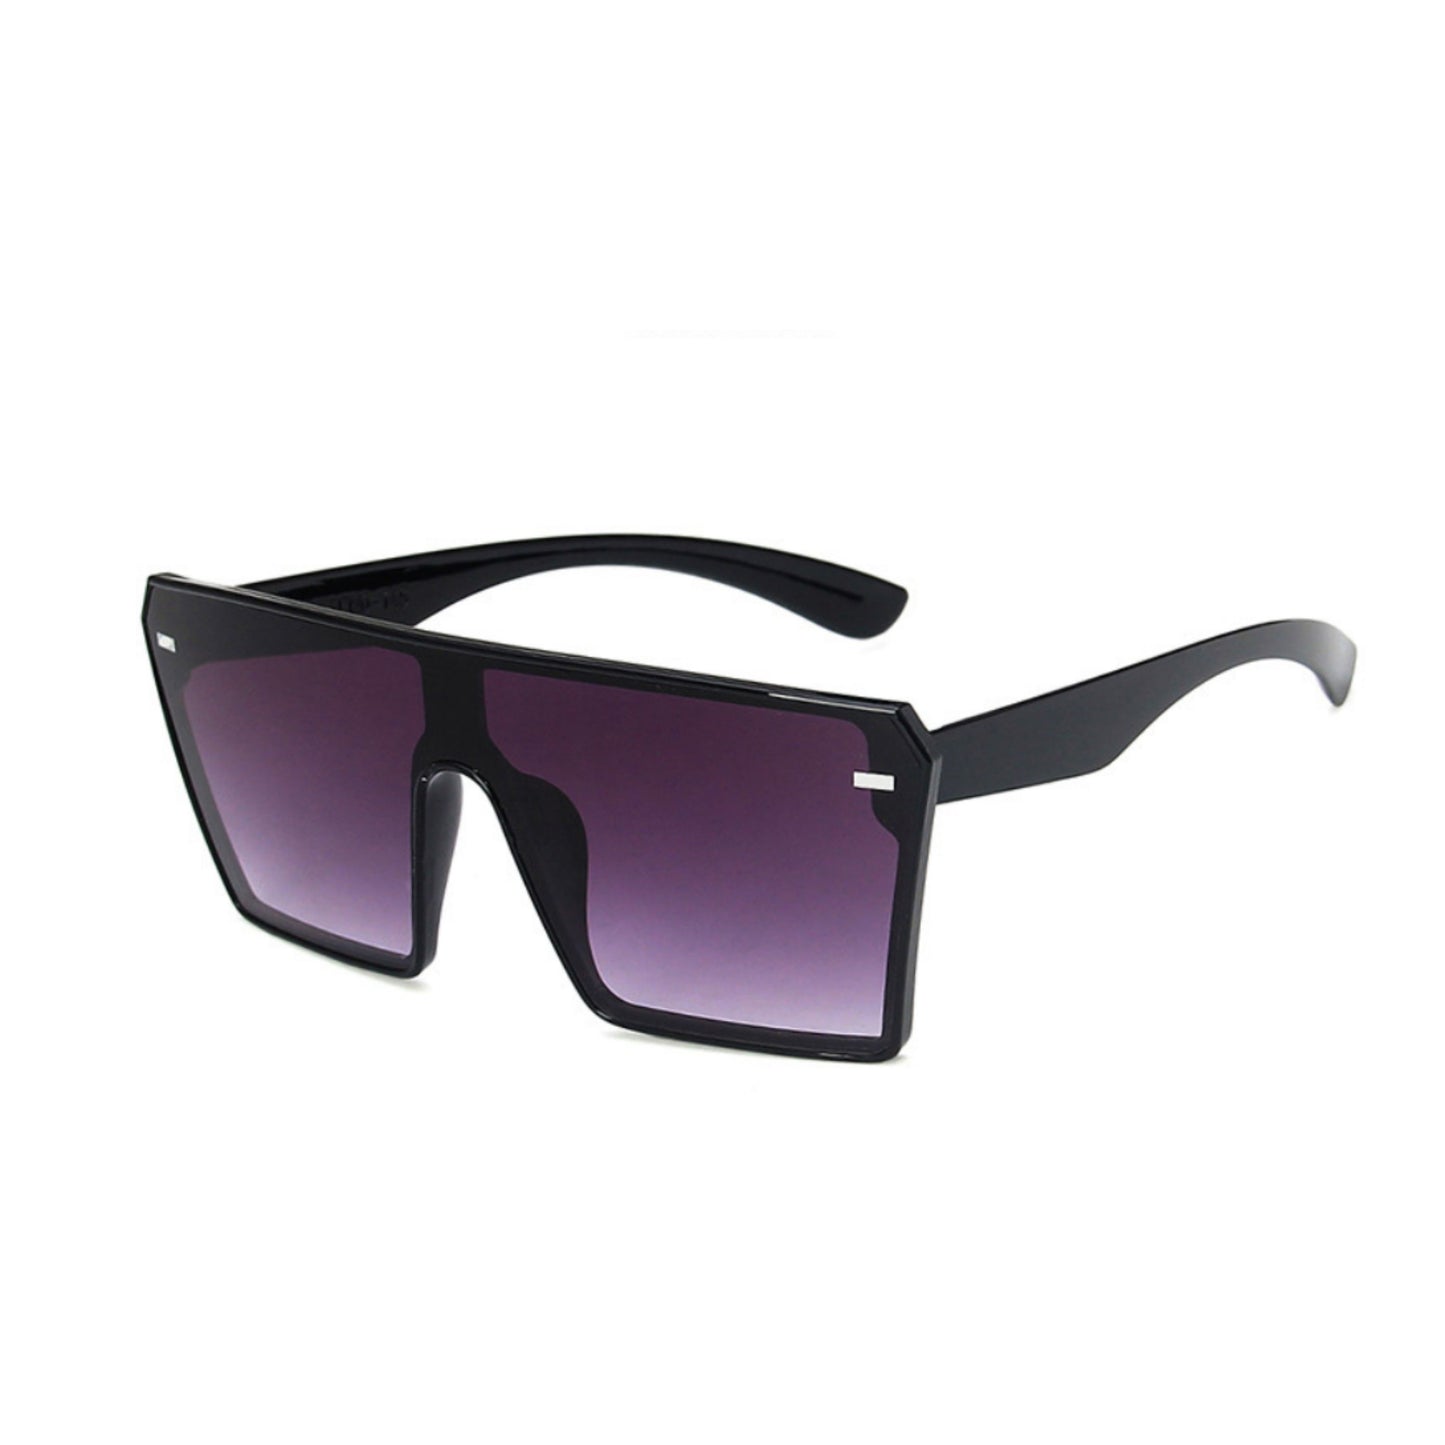 Black Fashion Gradient Fashion Sunglasses